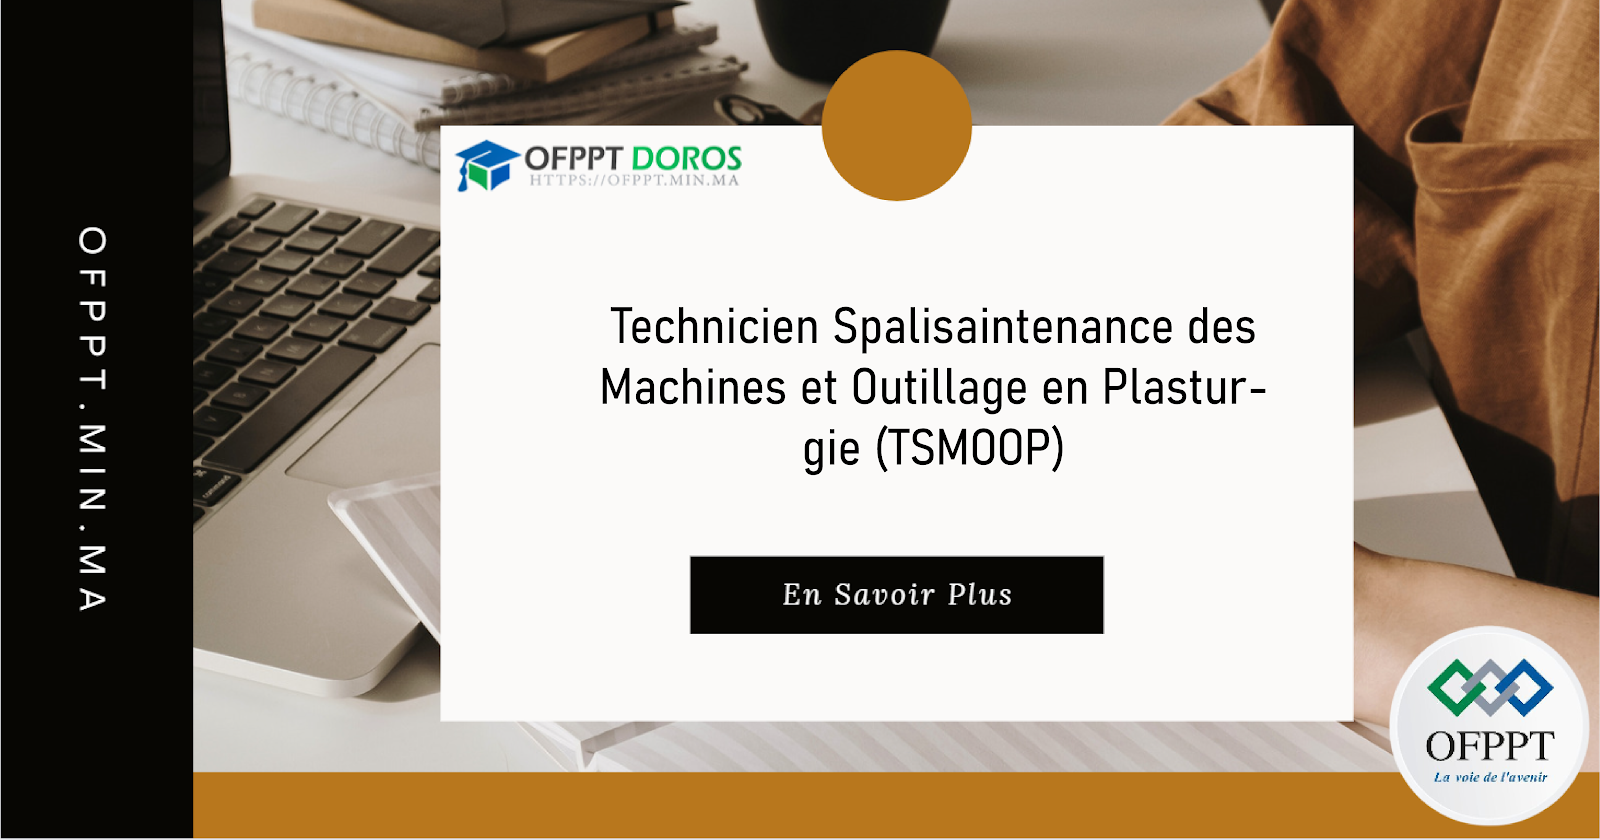 Technicien Spécialisé en Maintenance des Machines et Outillage en Plasturgie (TSMMOP)